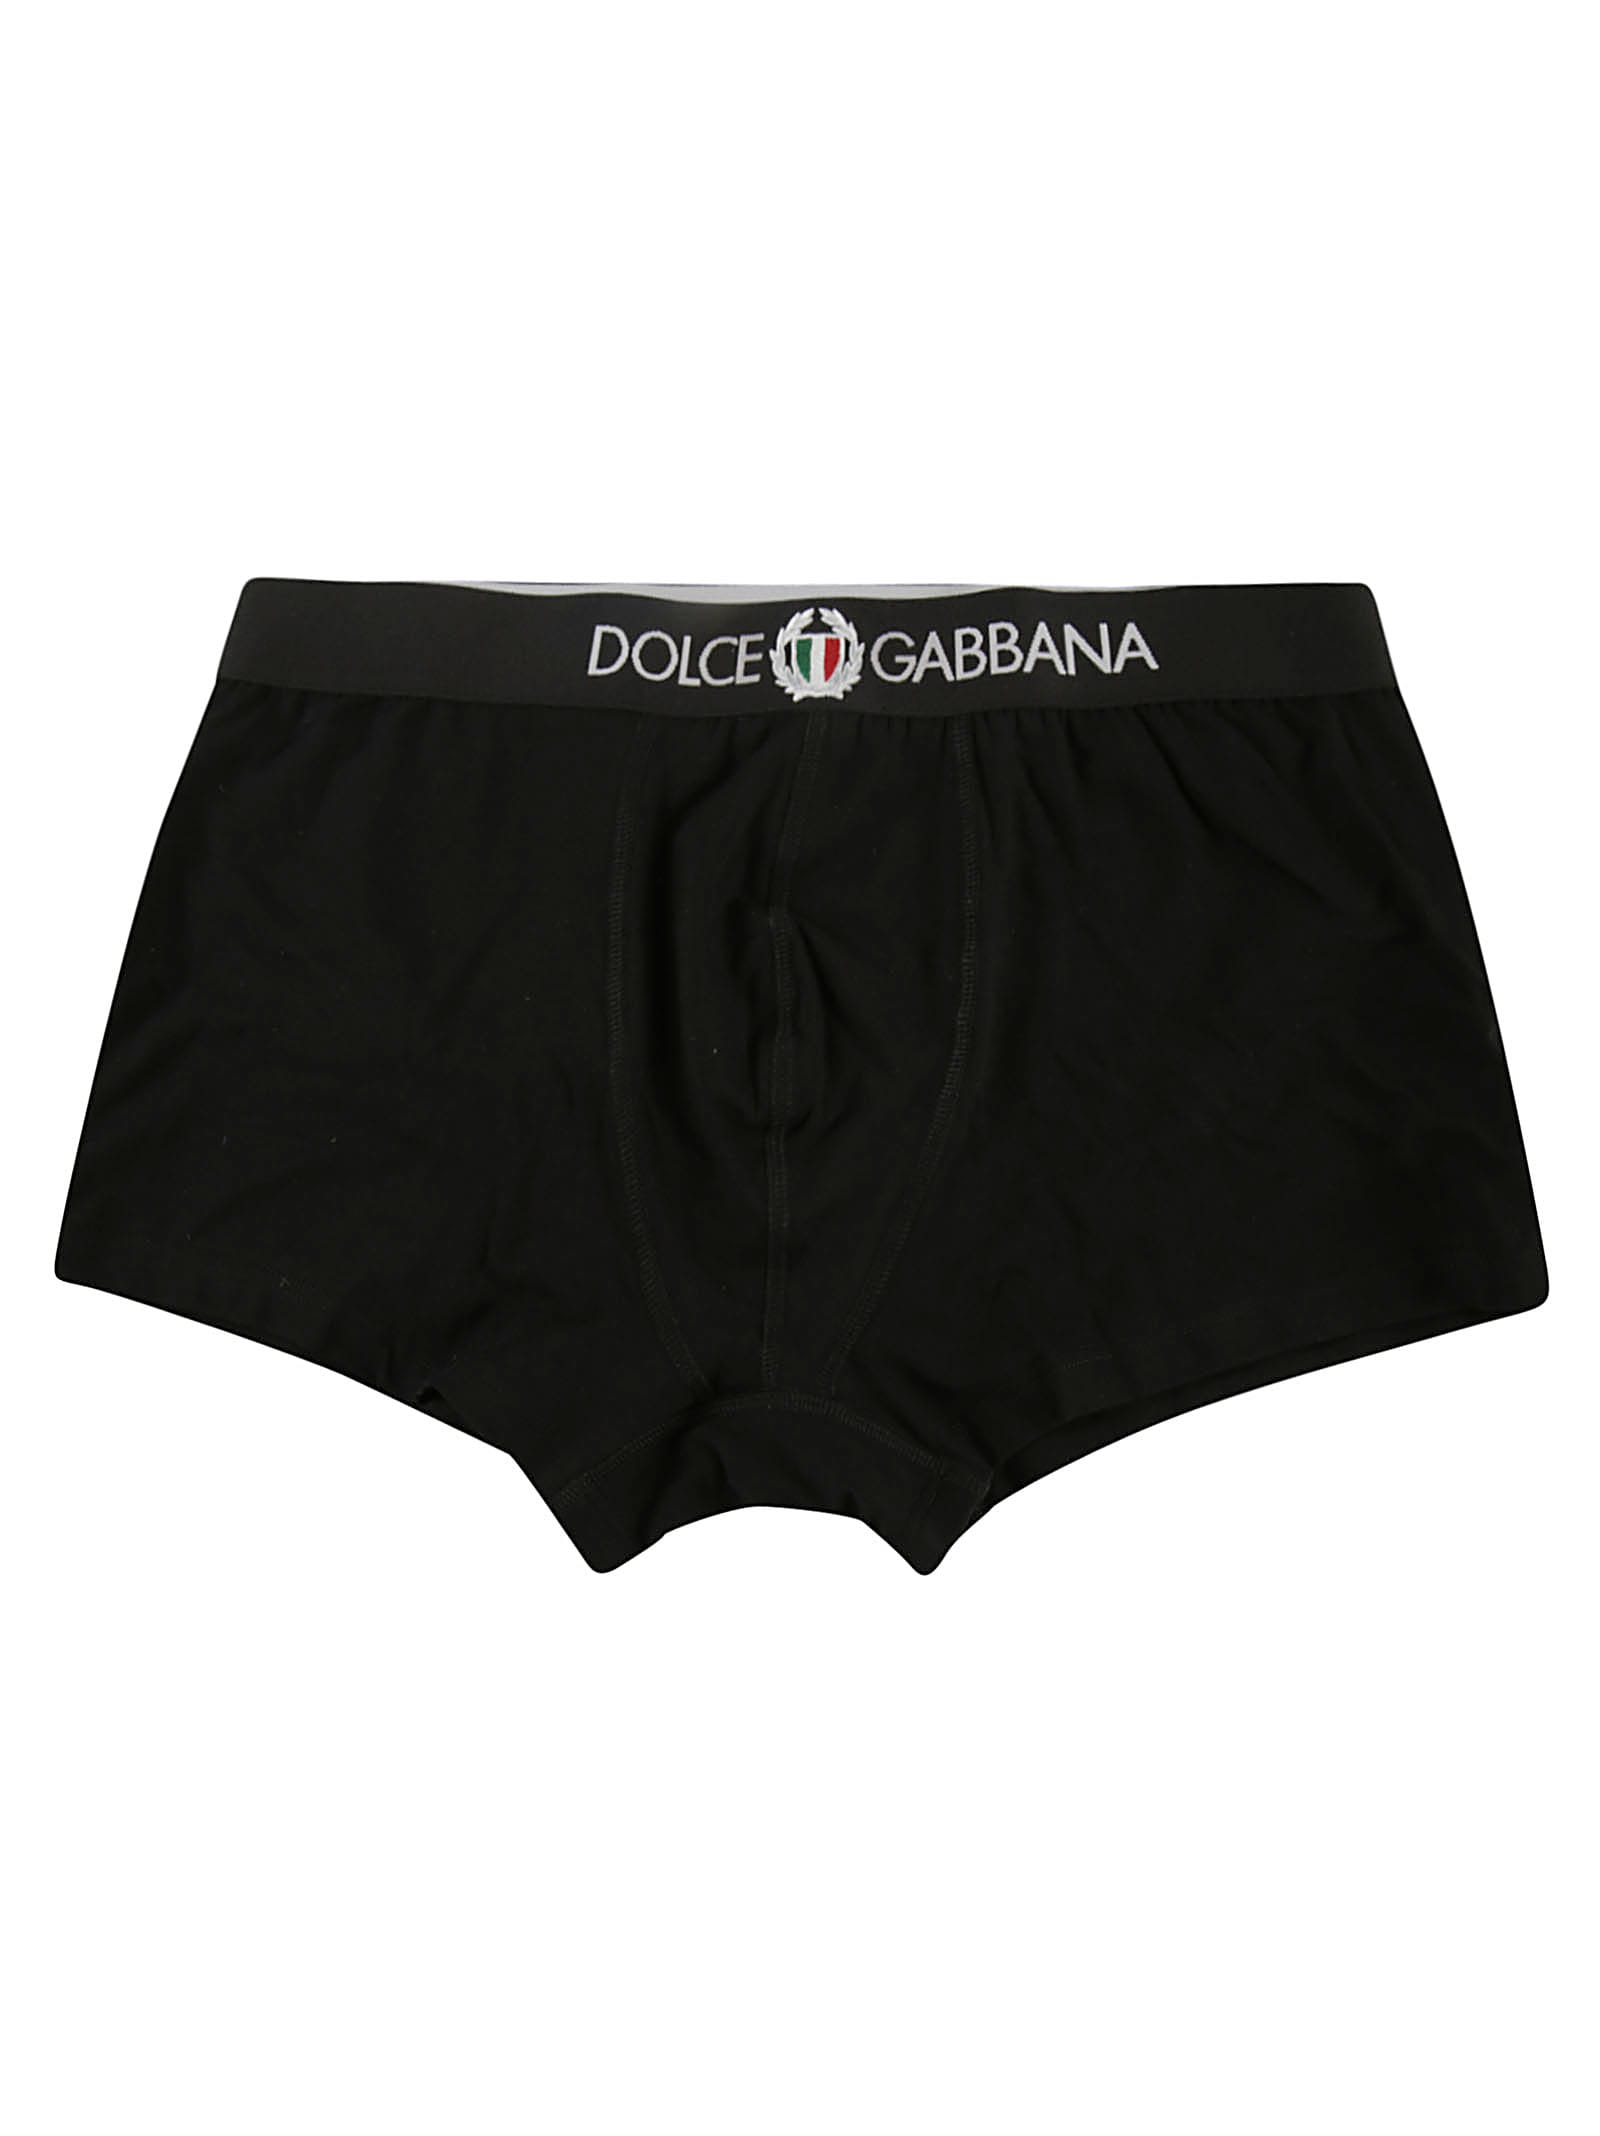 Dolce & Gabbana Sport Crest Stretch Cotton Regular Boxer White